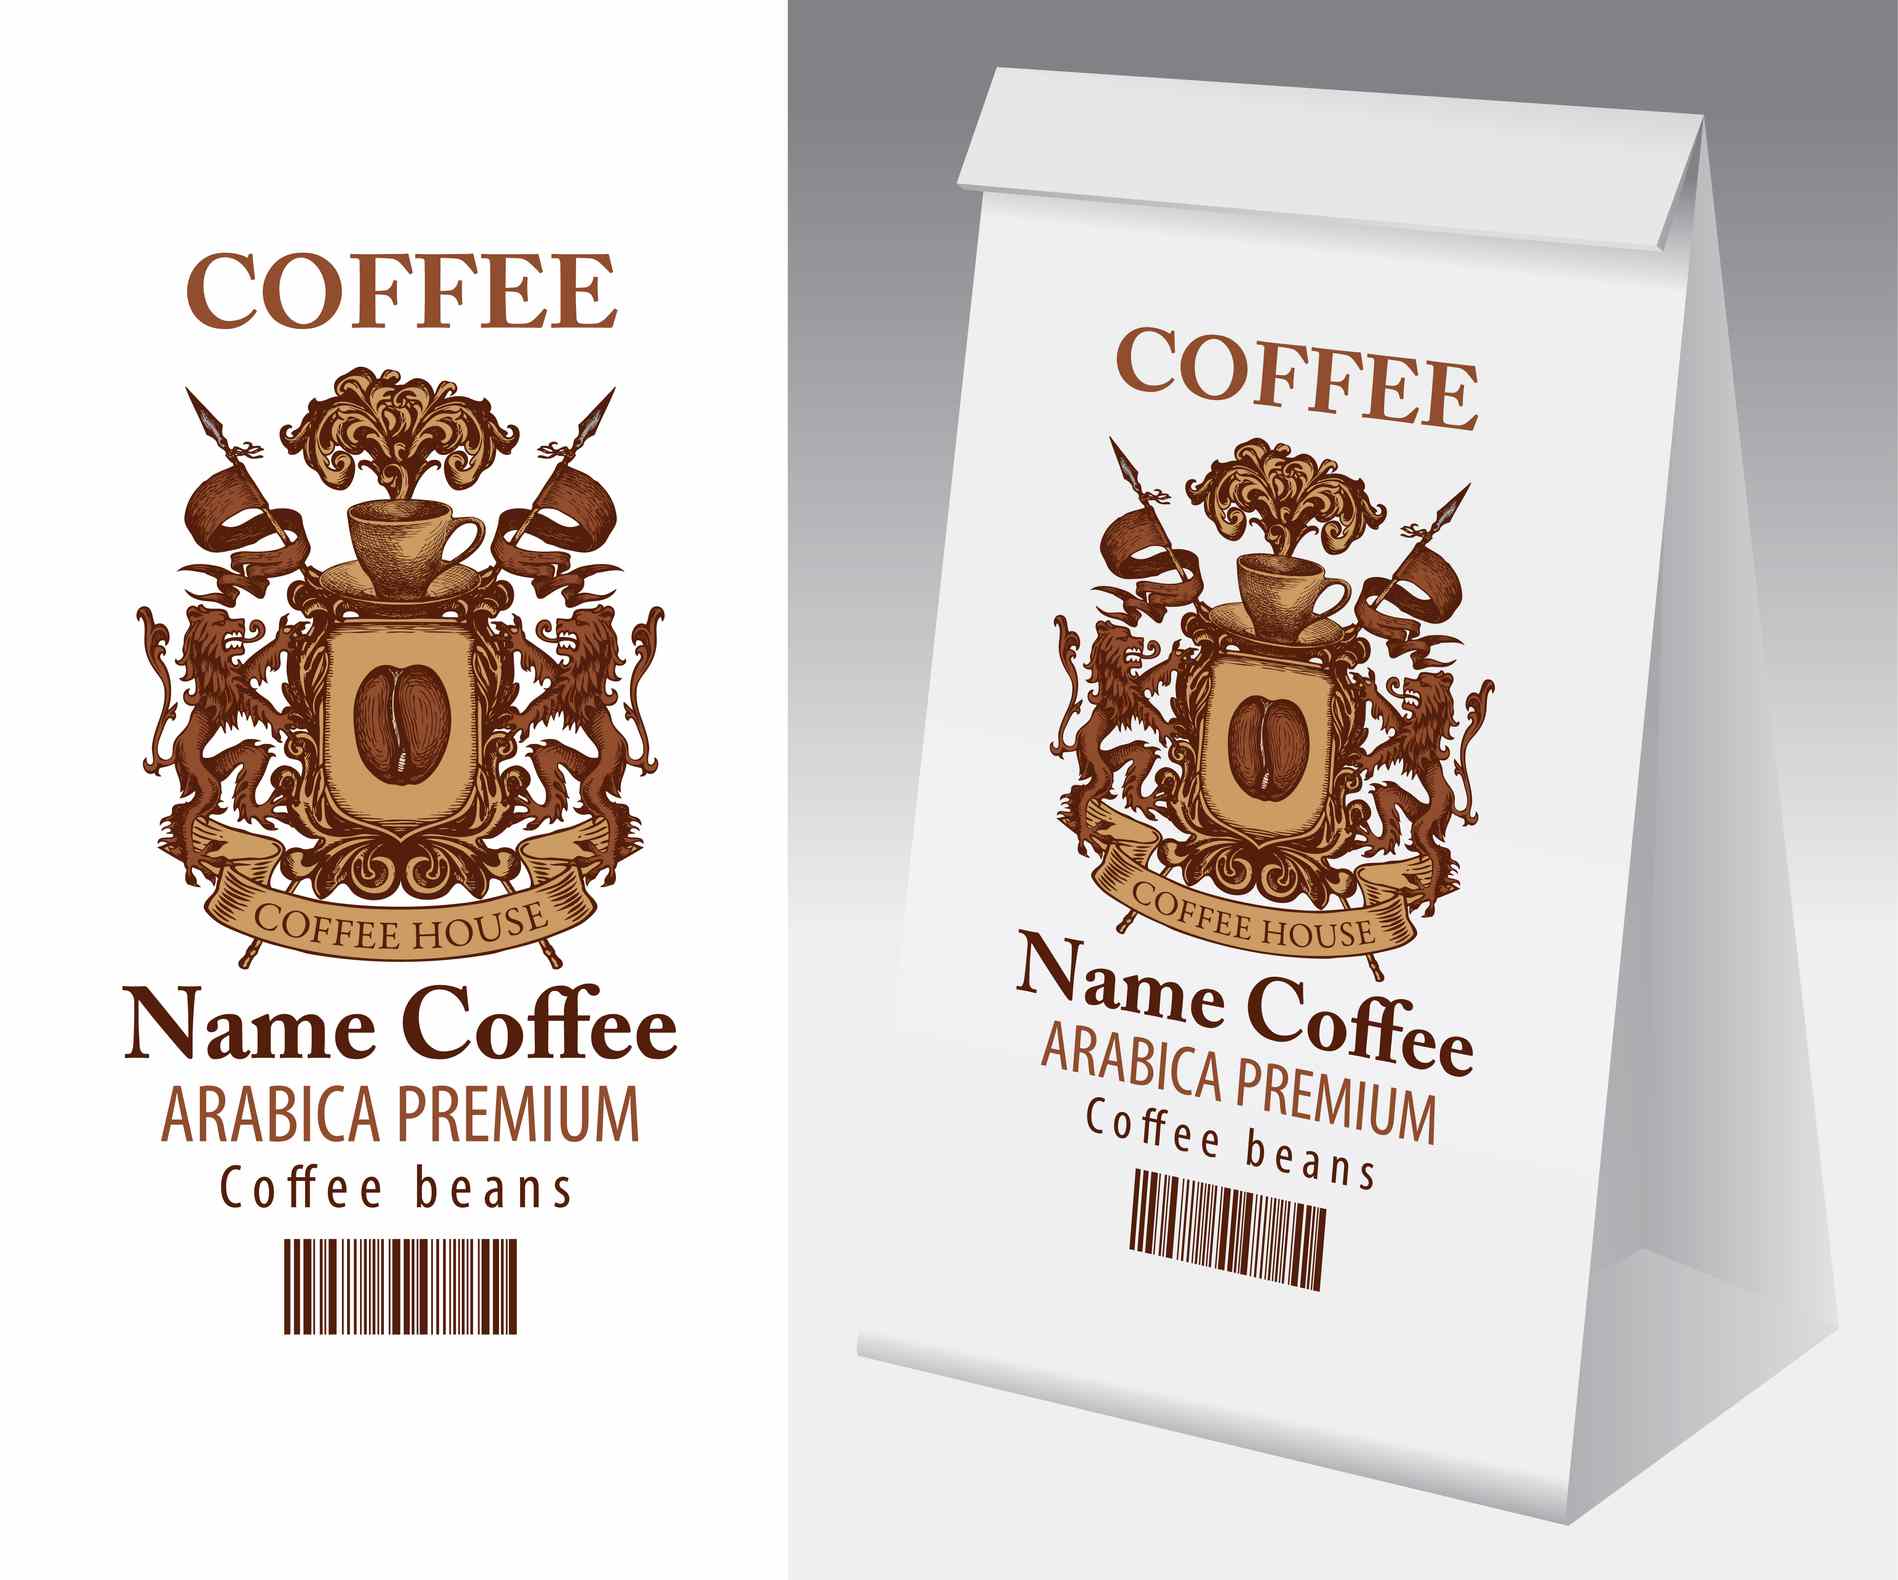 Maquete de embalagem de café